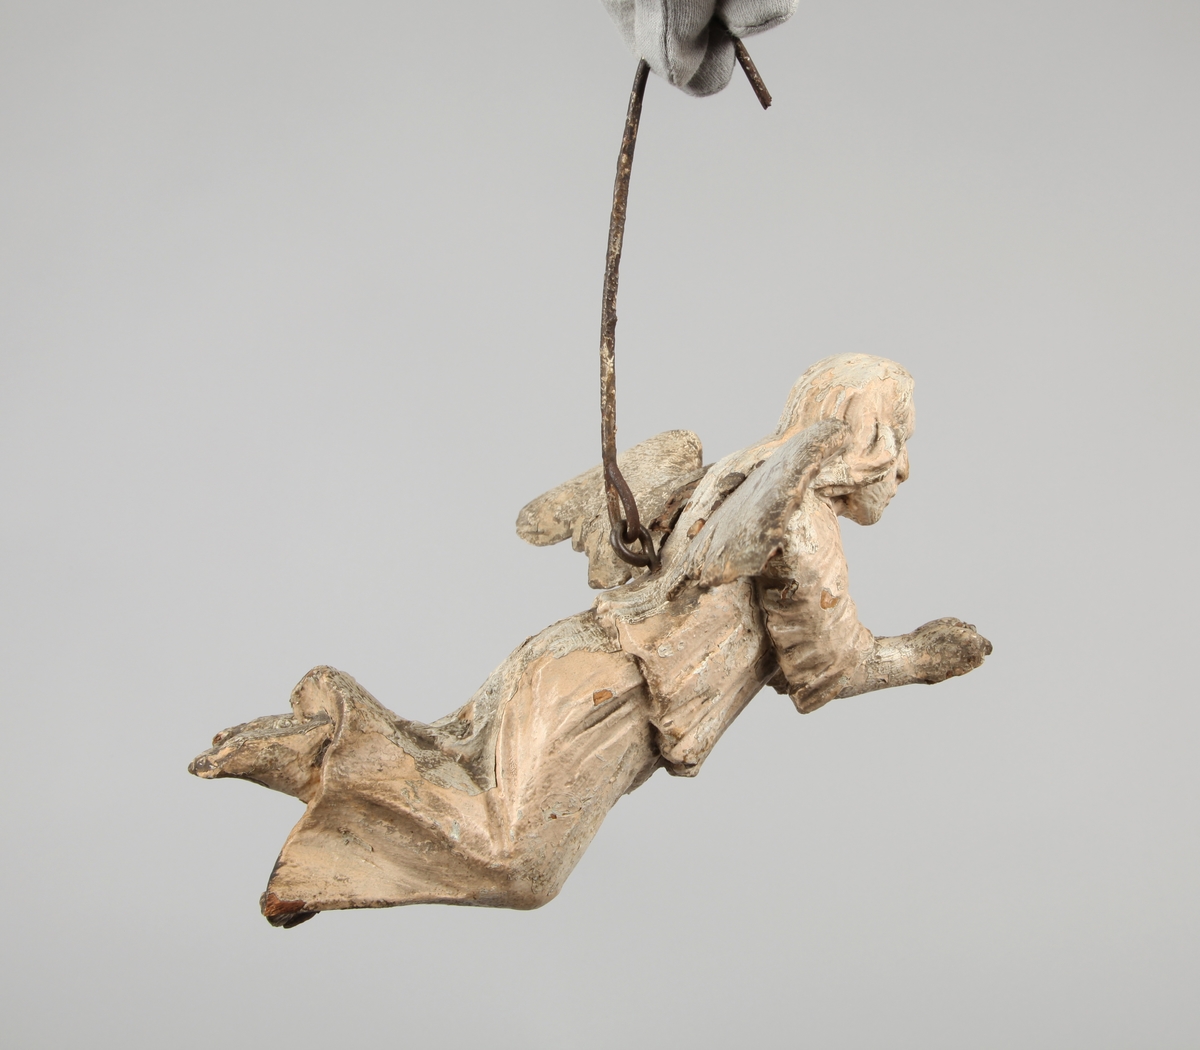 Engleskulptur hengende i en jernbøyle. Vingene er skåret separat og naglet til kroppen.